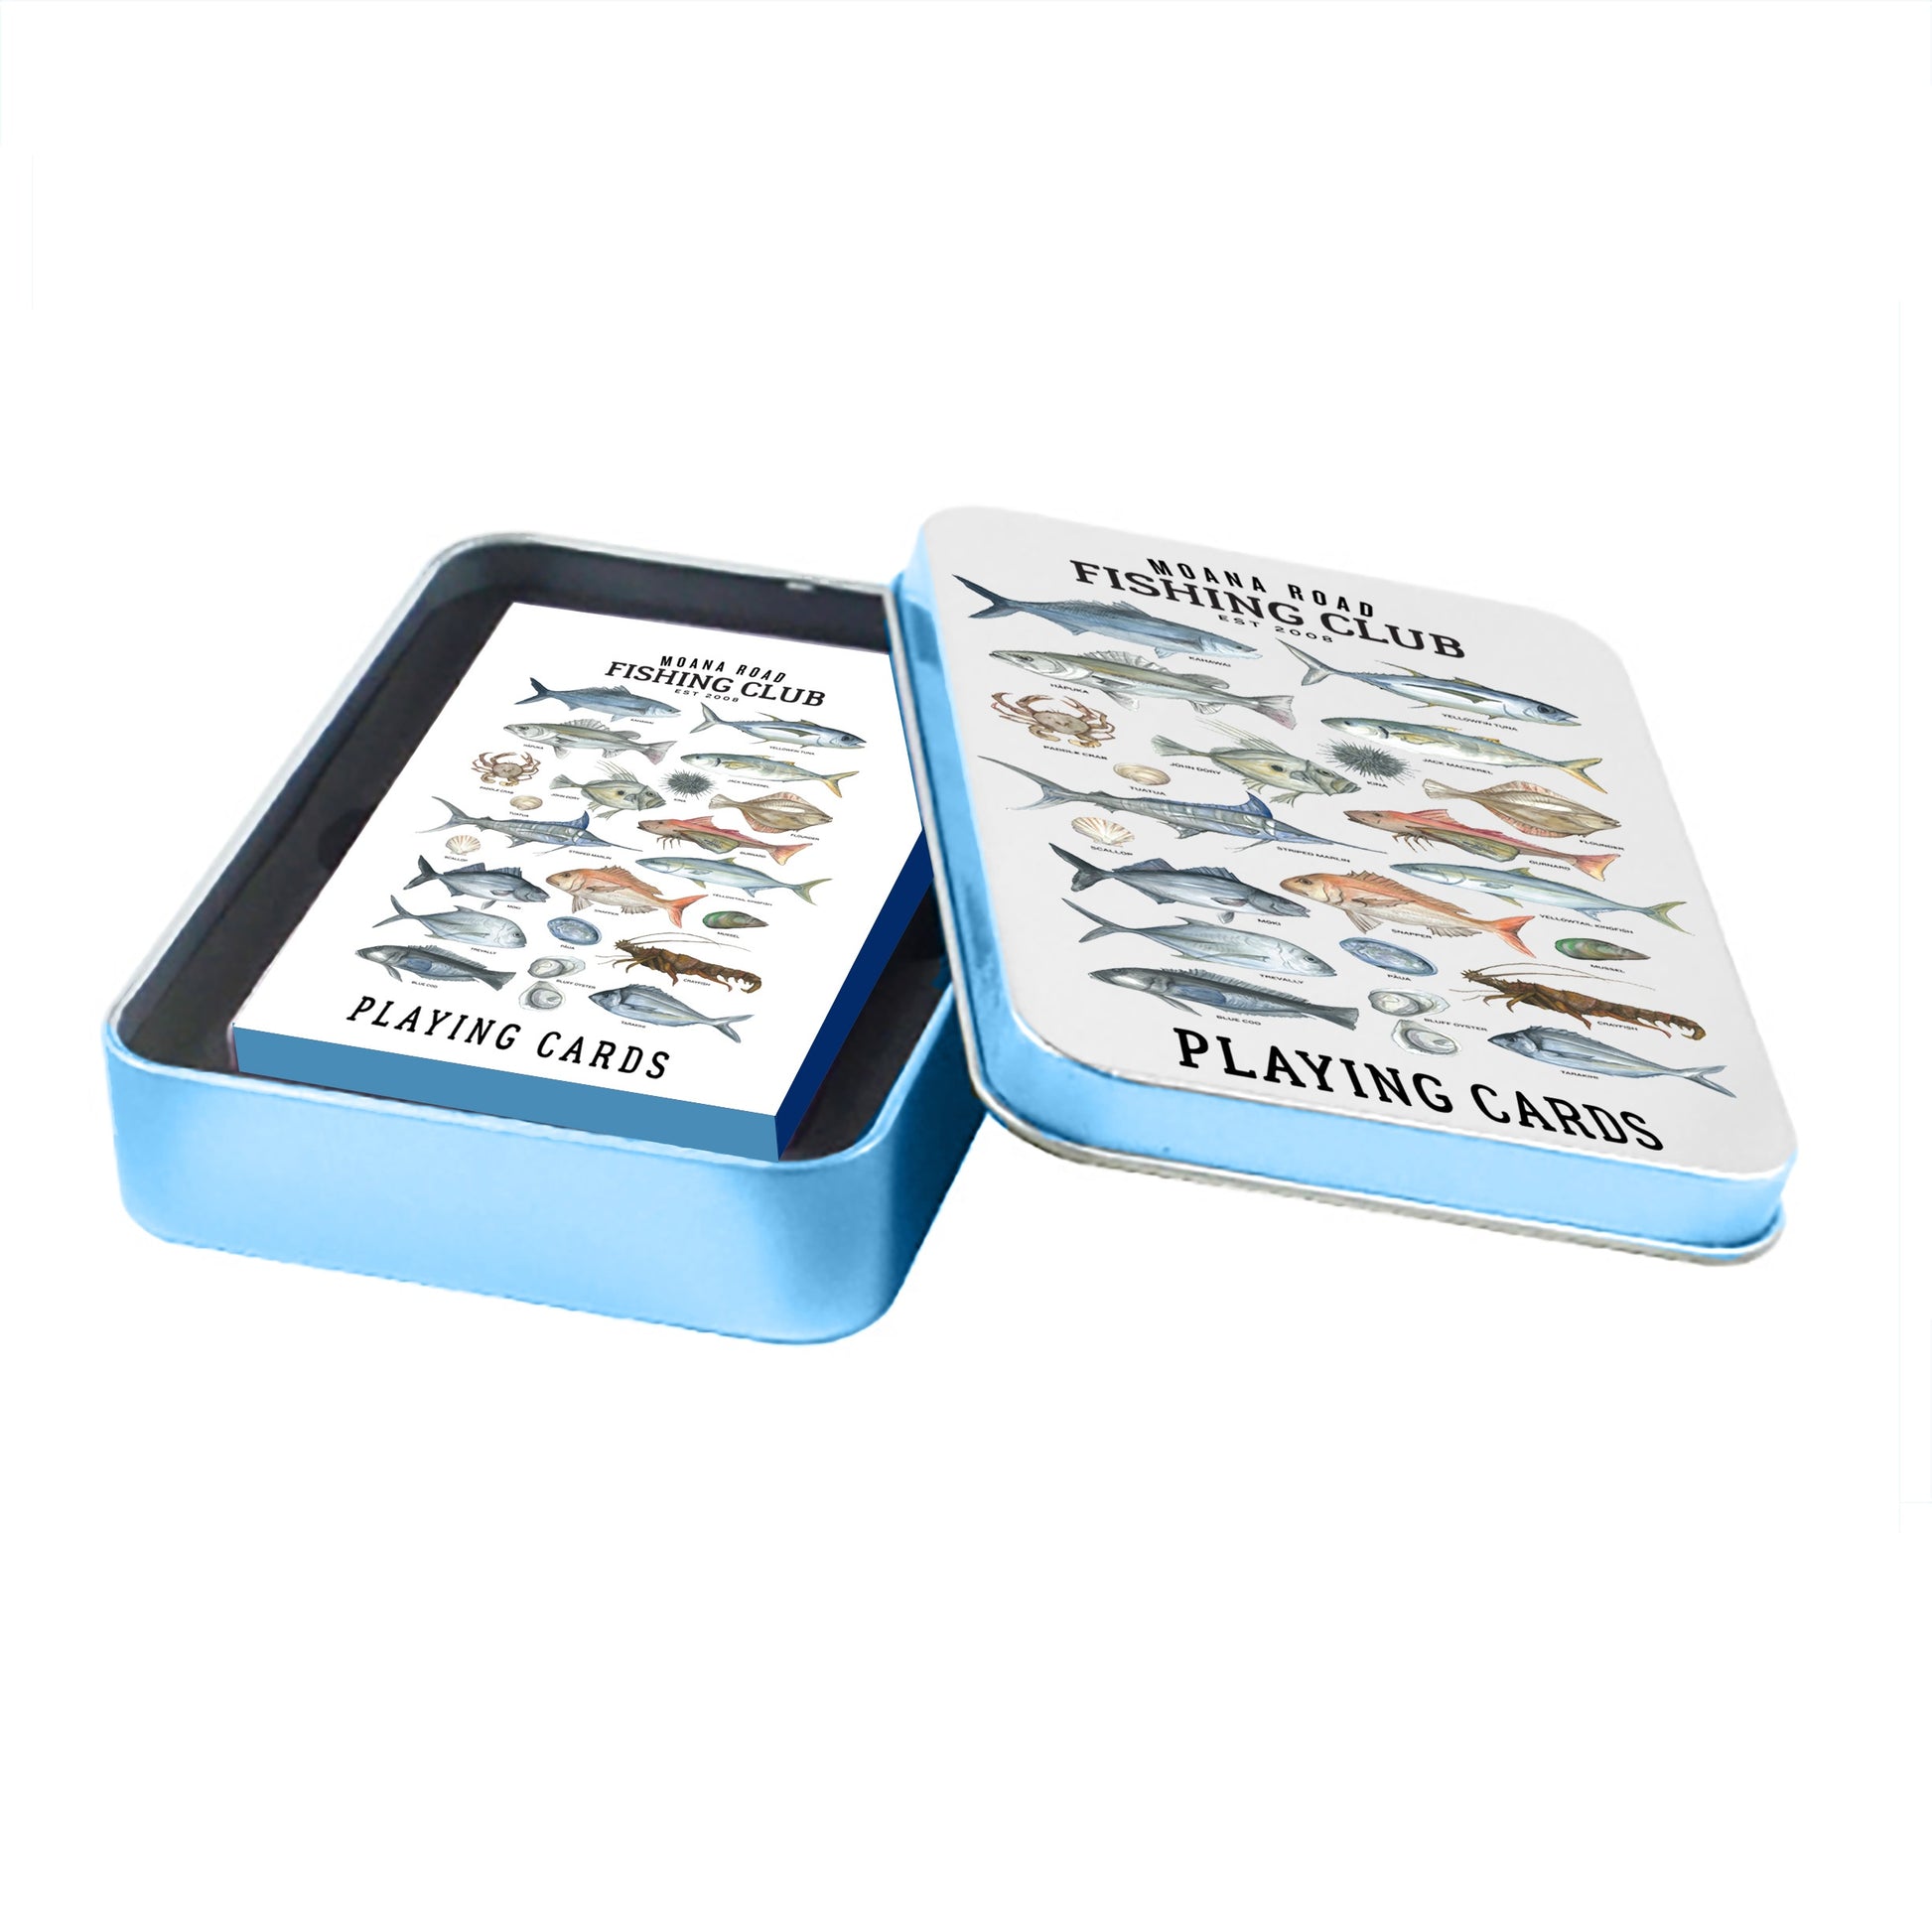 https://www.avisons.co.nz/cdn/shop/products/243---Fishing-Playing-Club-Cards-Tin.jpg?v=1671145993&width=1946